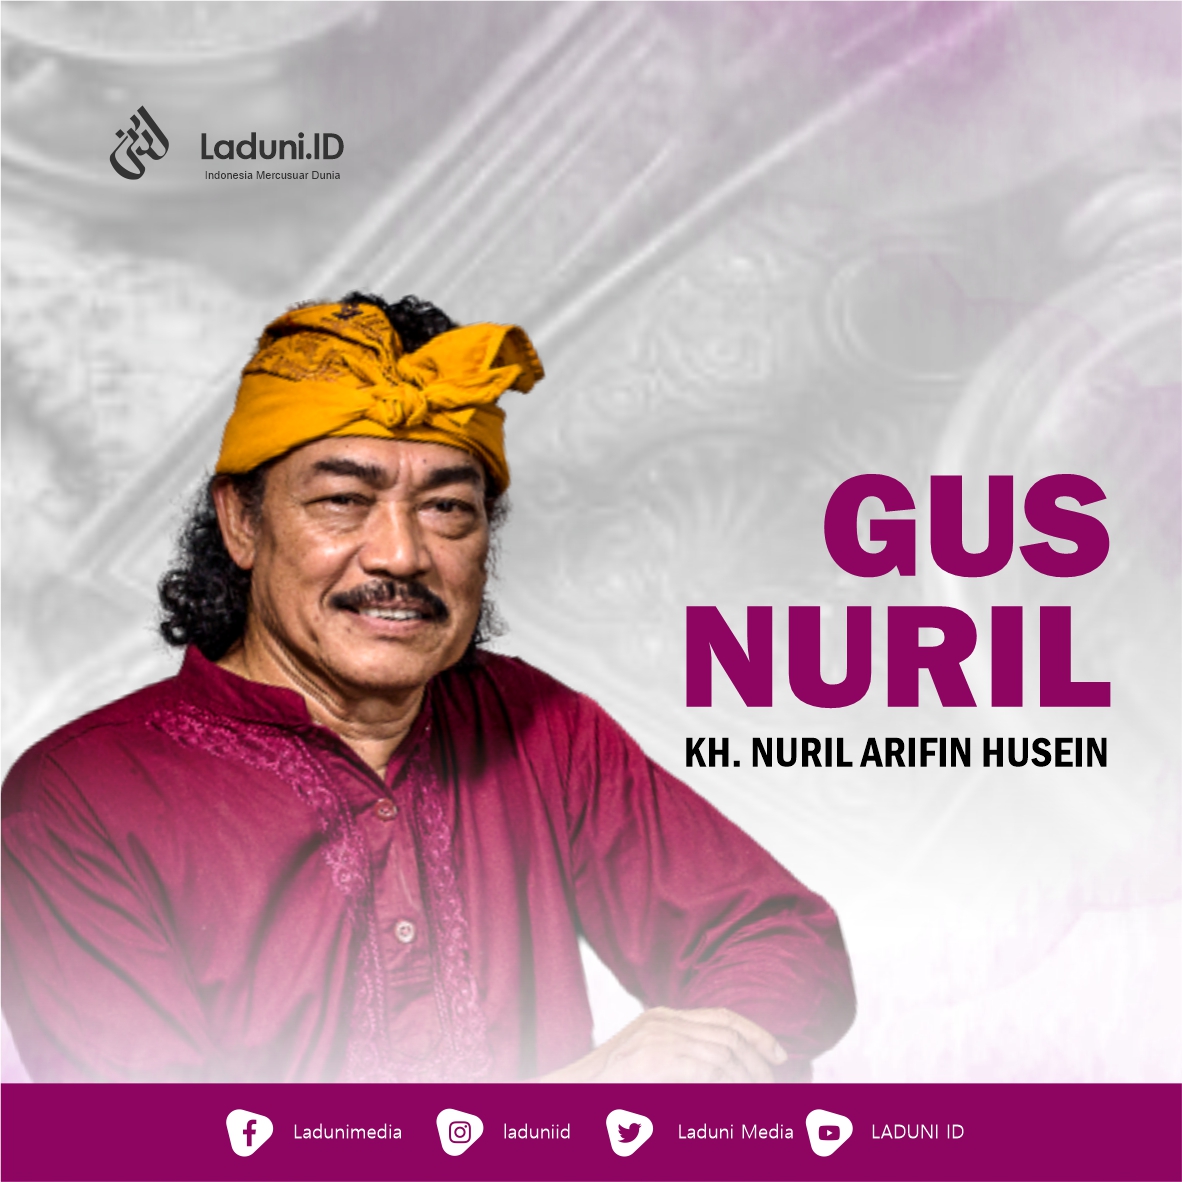 Biografi KH. Nuril Arifin Husein (Gus Nuril)